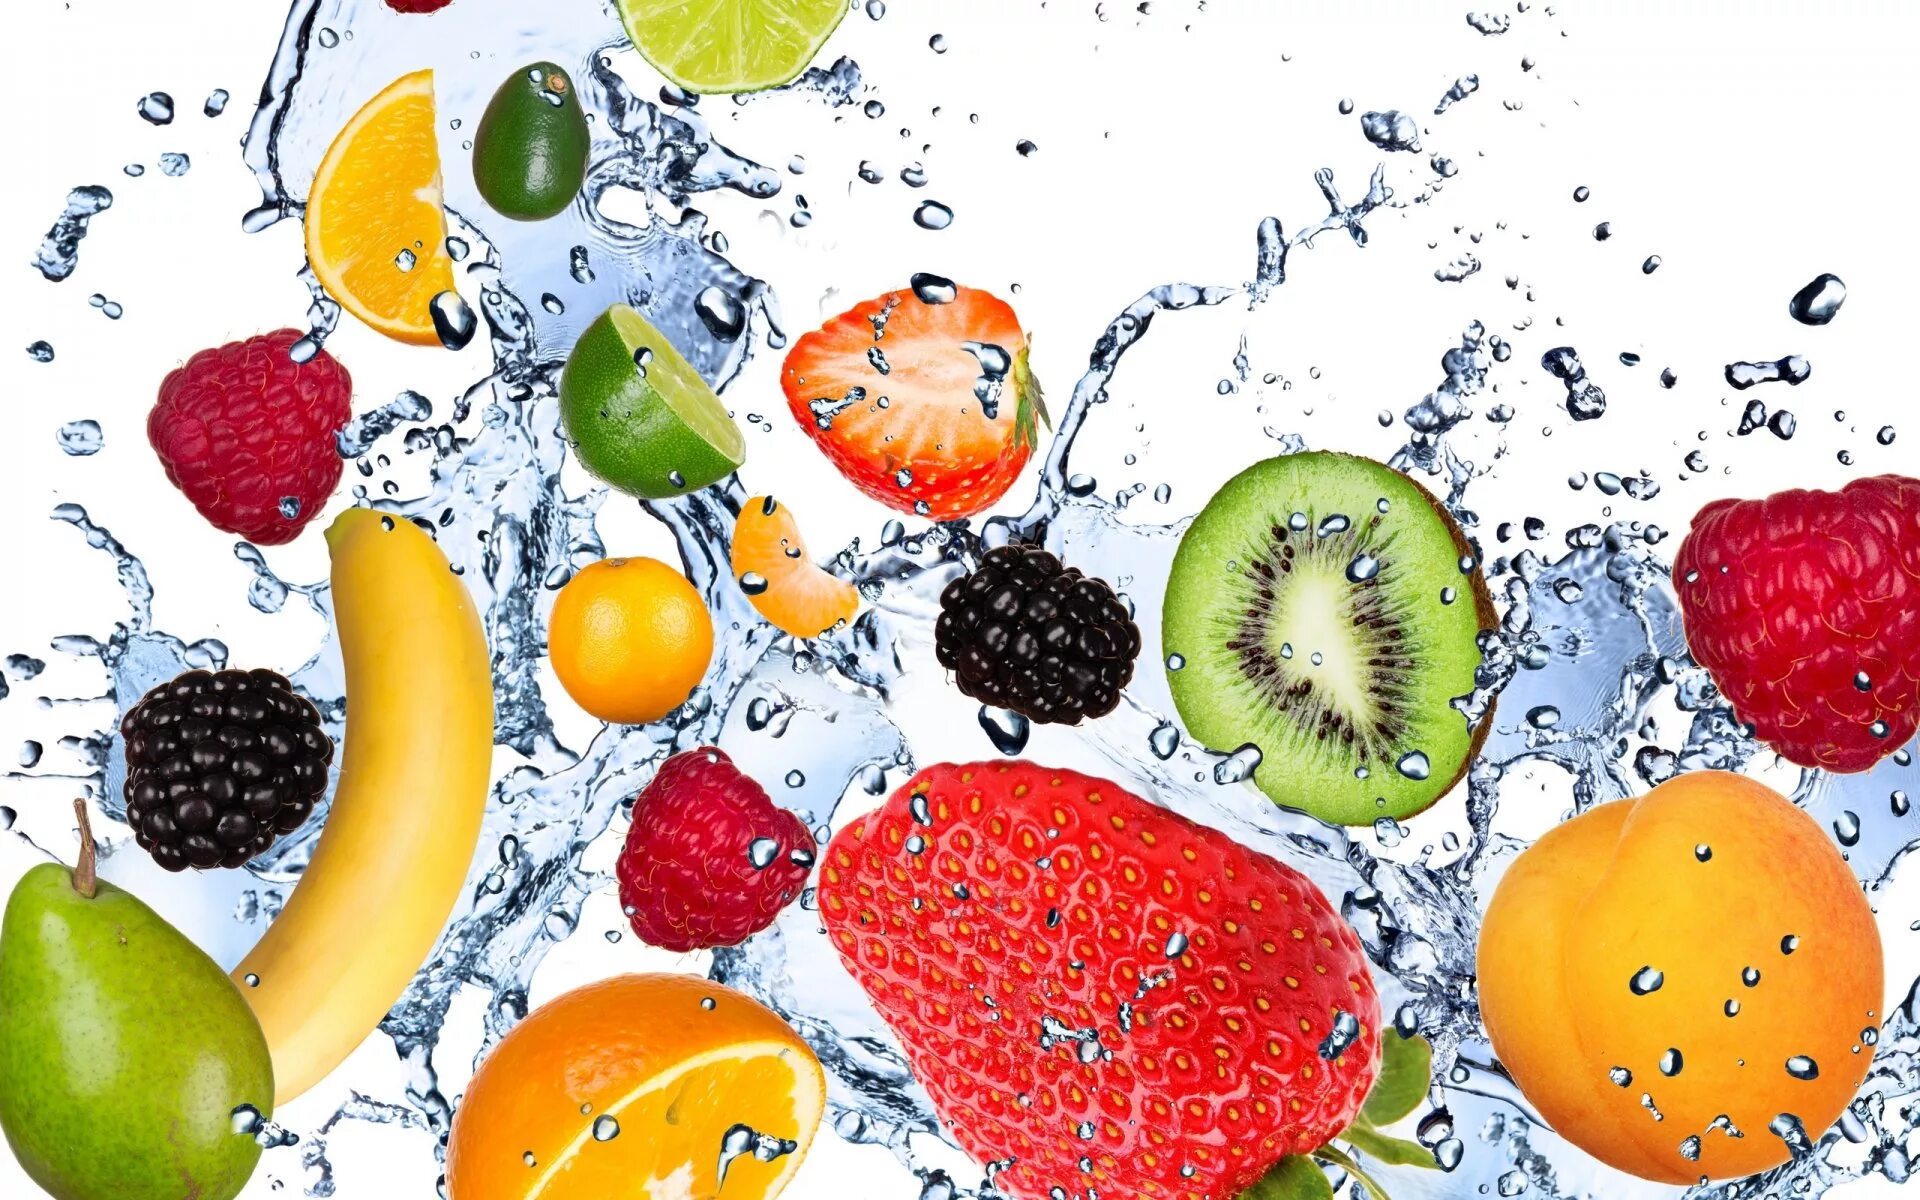 Заставка на телефон фрукты. Фрукты в воде. Сочные фрукты. Фрукты фон. Сочные овощи и фрукты.